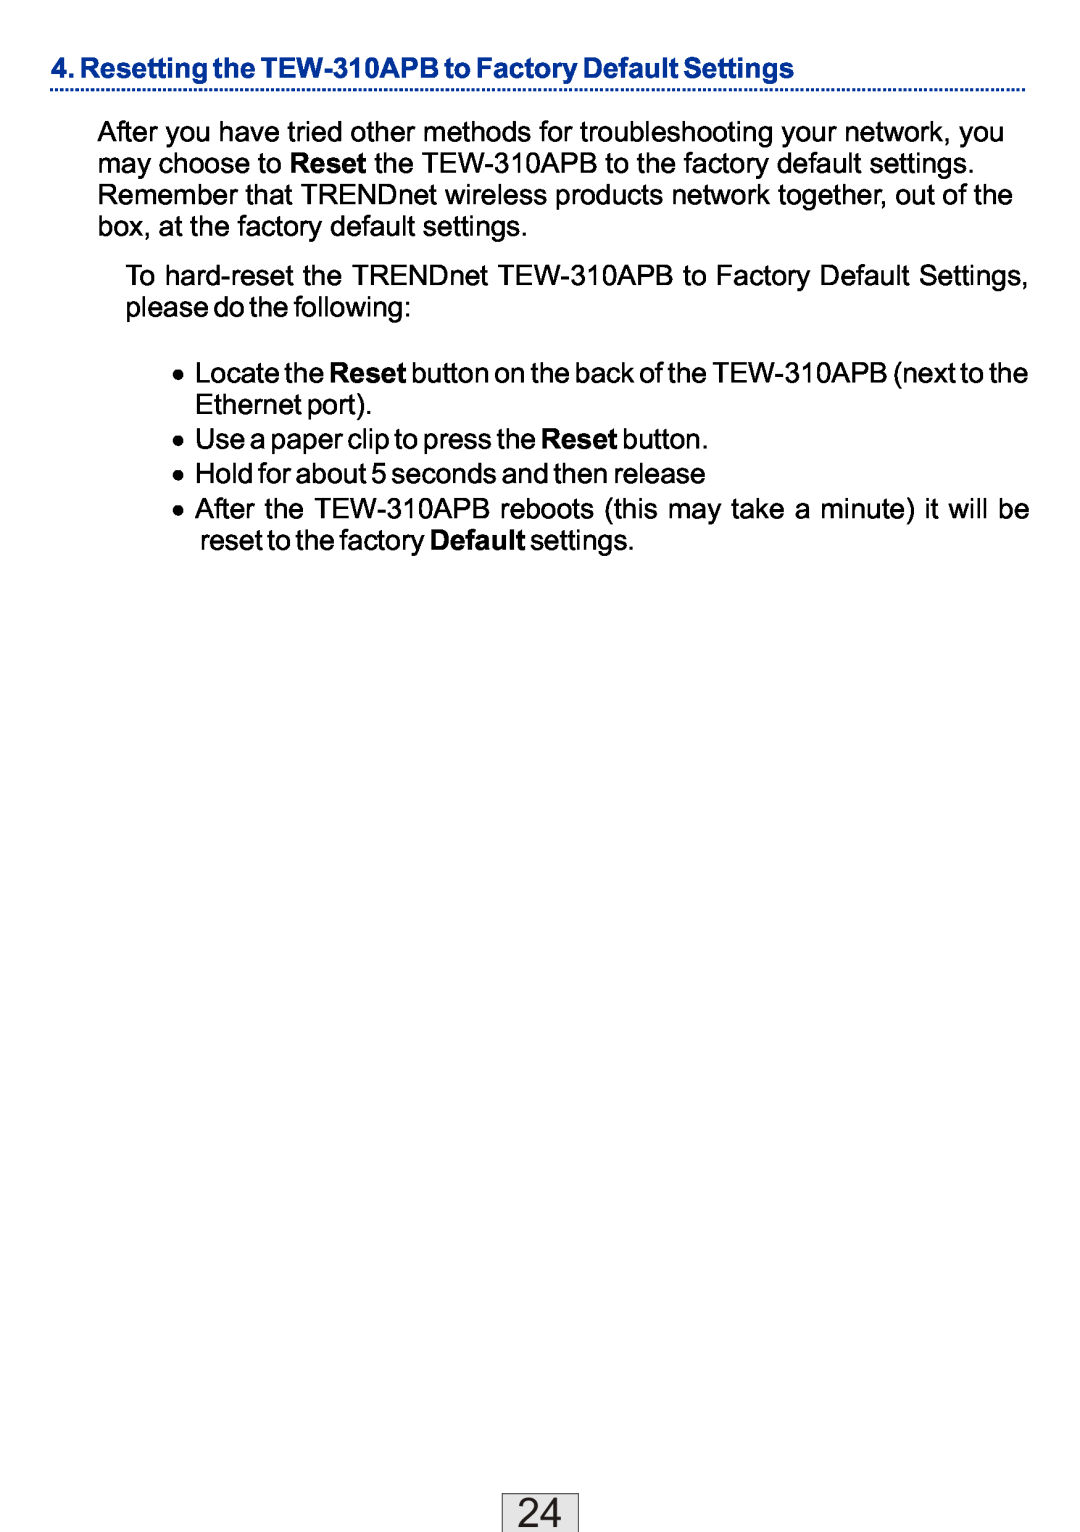 TRENDnet TEW-310APBX manual Resetting the TEW-310APB to Factory Default Settings 